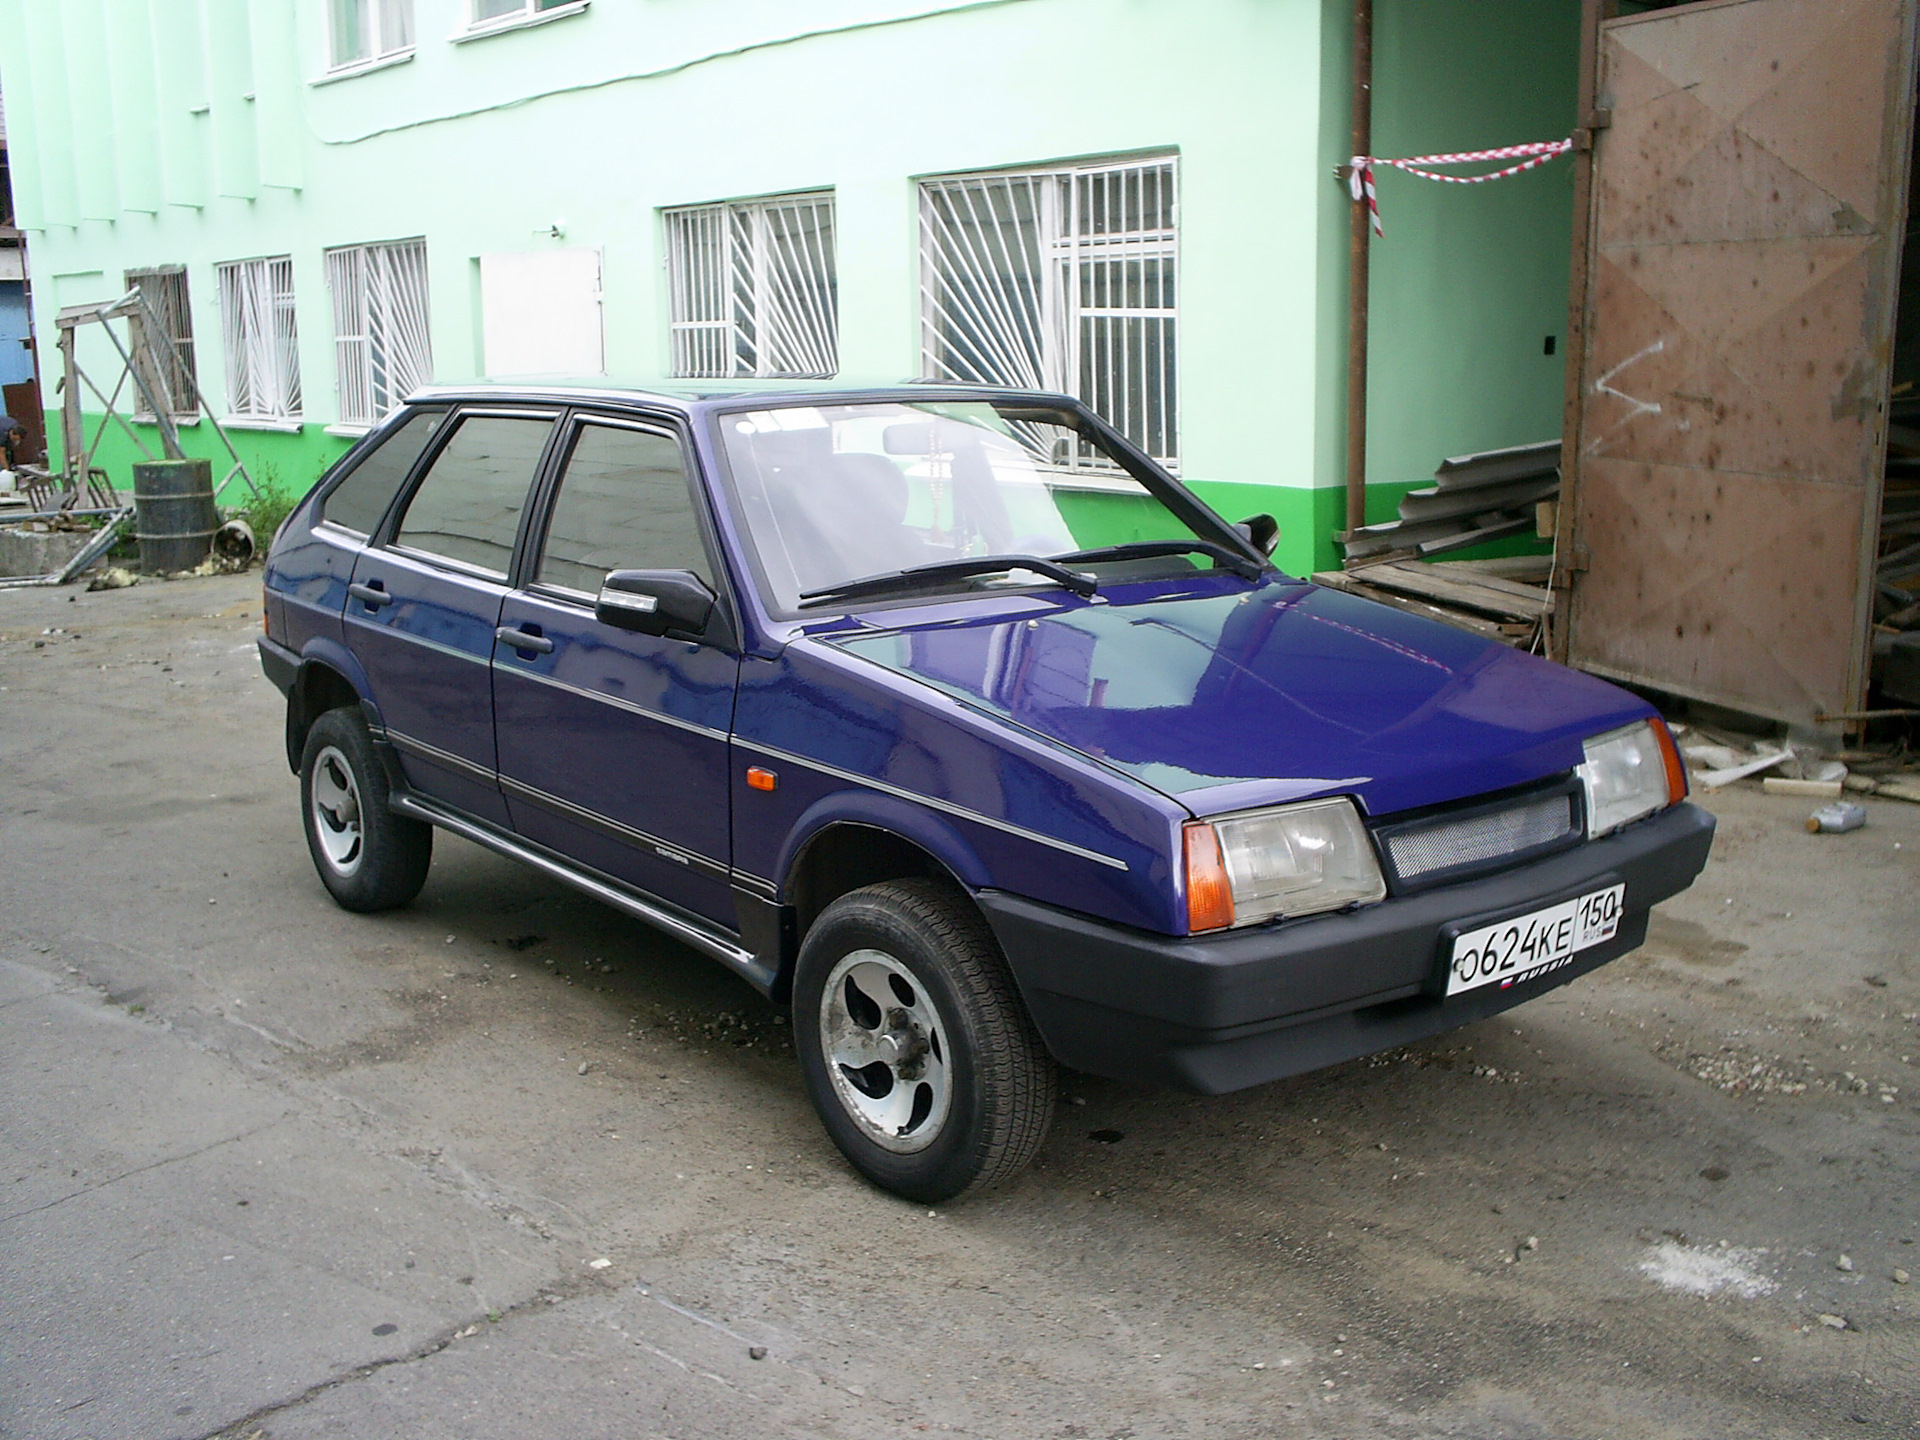 Автомобили ваз 21093. ВАЗ 21093. ВАЗ-21093 Спутник. ВАЗ 21093 1998 синий. Машина ВАЗ 21093.